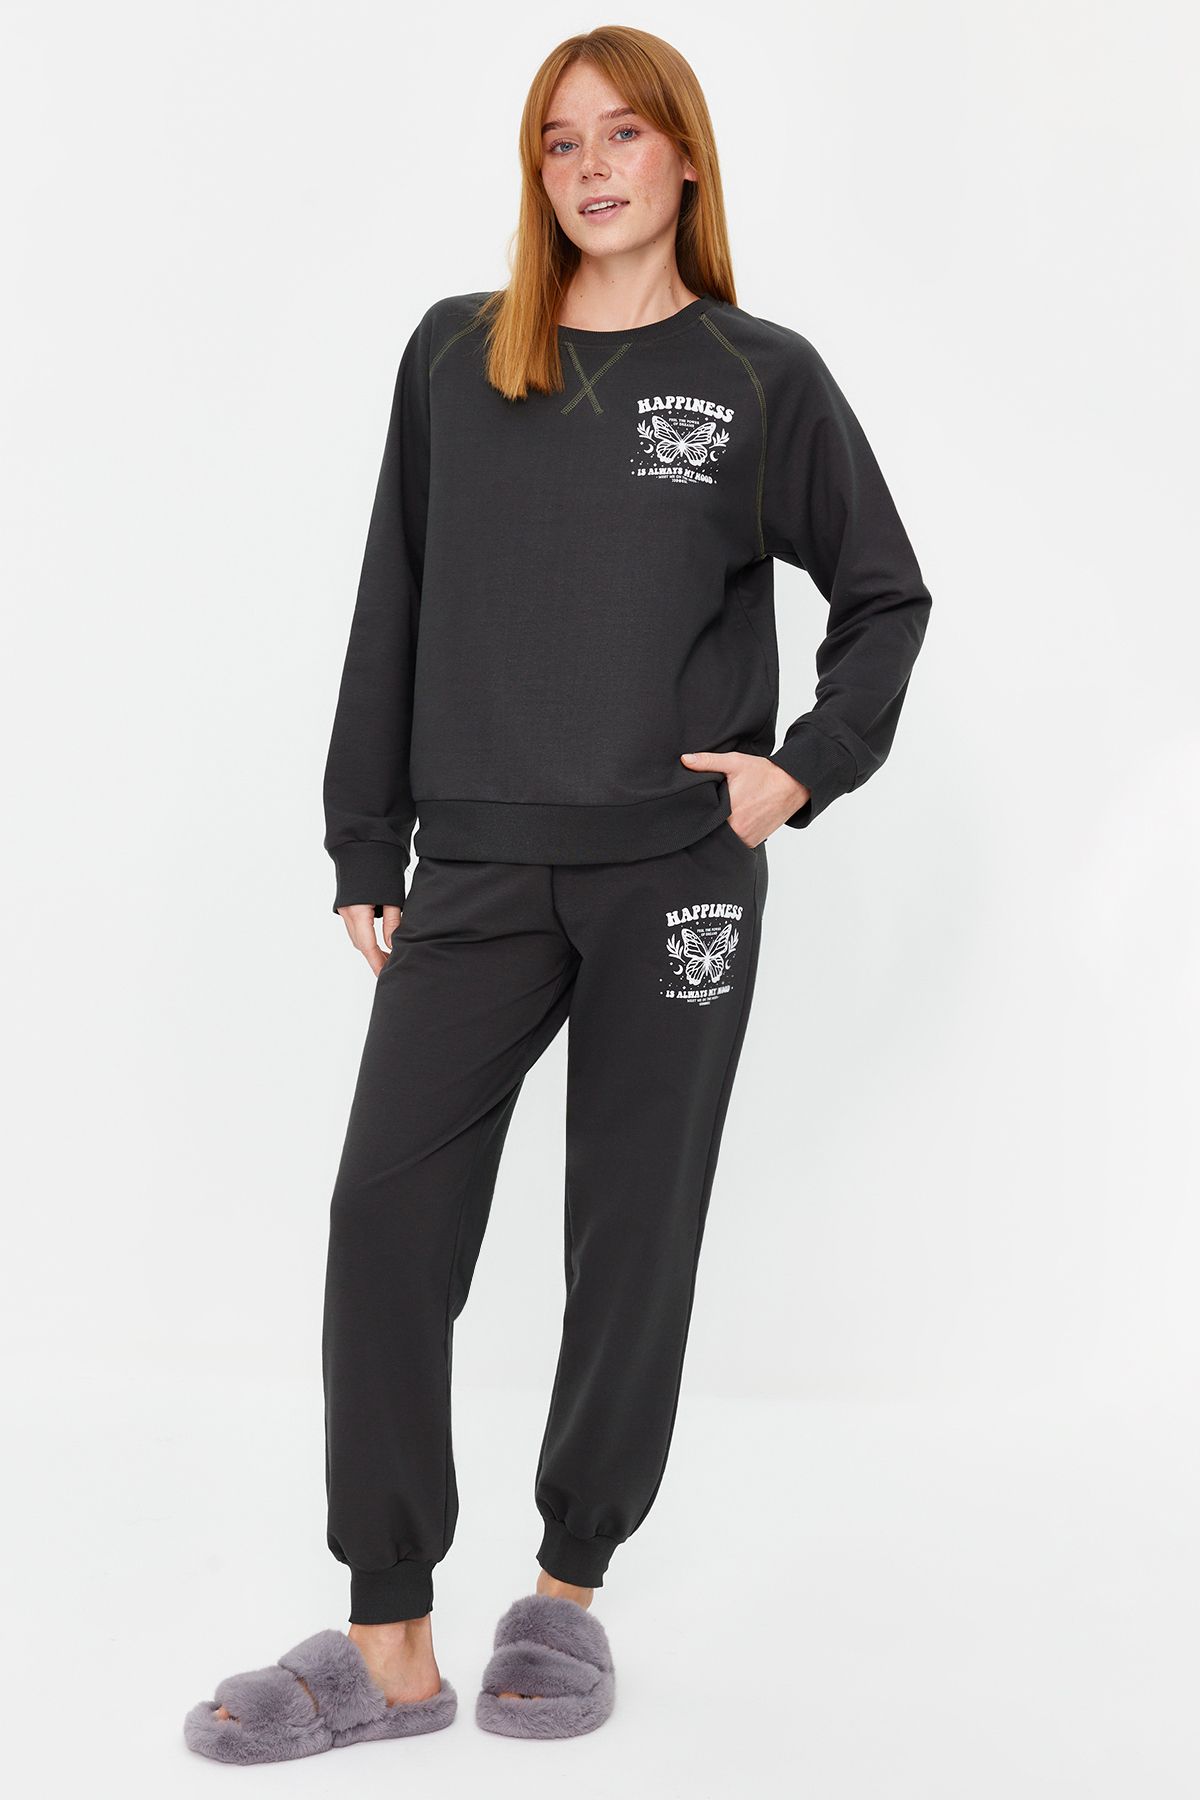 TRENDYOLMİLLA Antrasit Pamuklu Baskılı Sweatshirt-Jogger Örme Pijama Takımı THMAW24PT00319